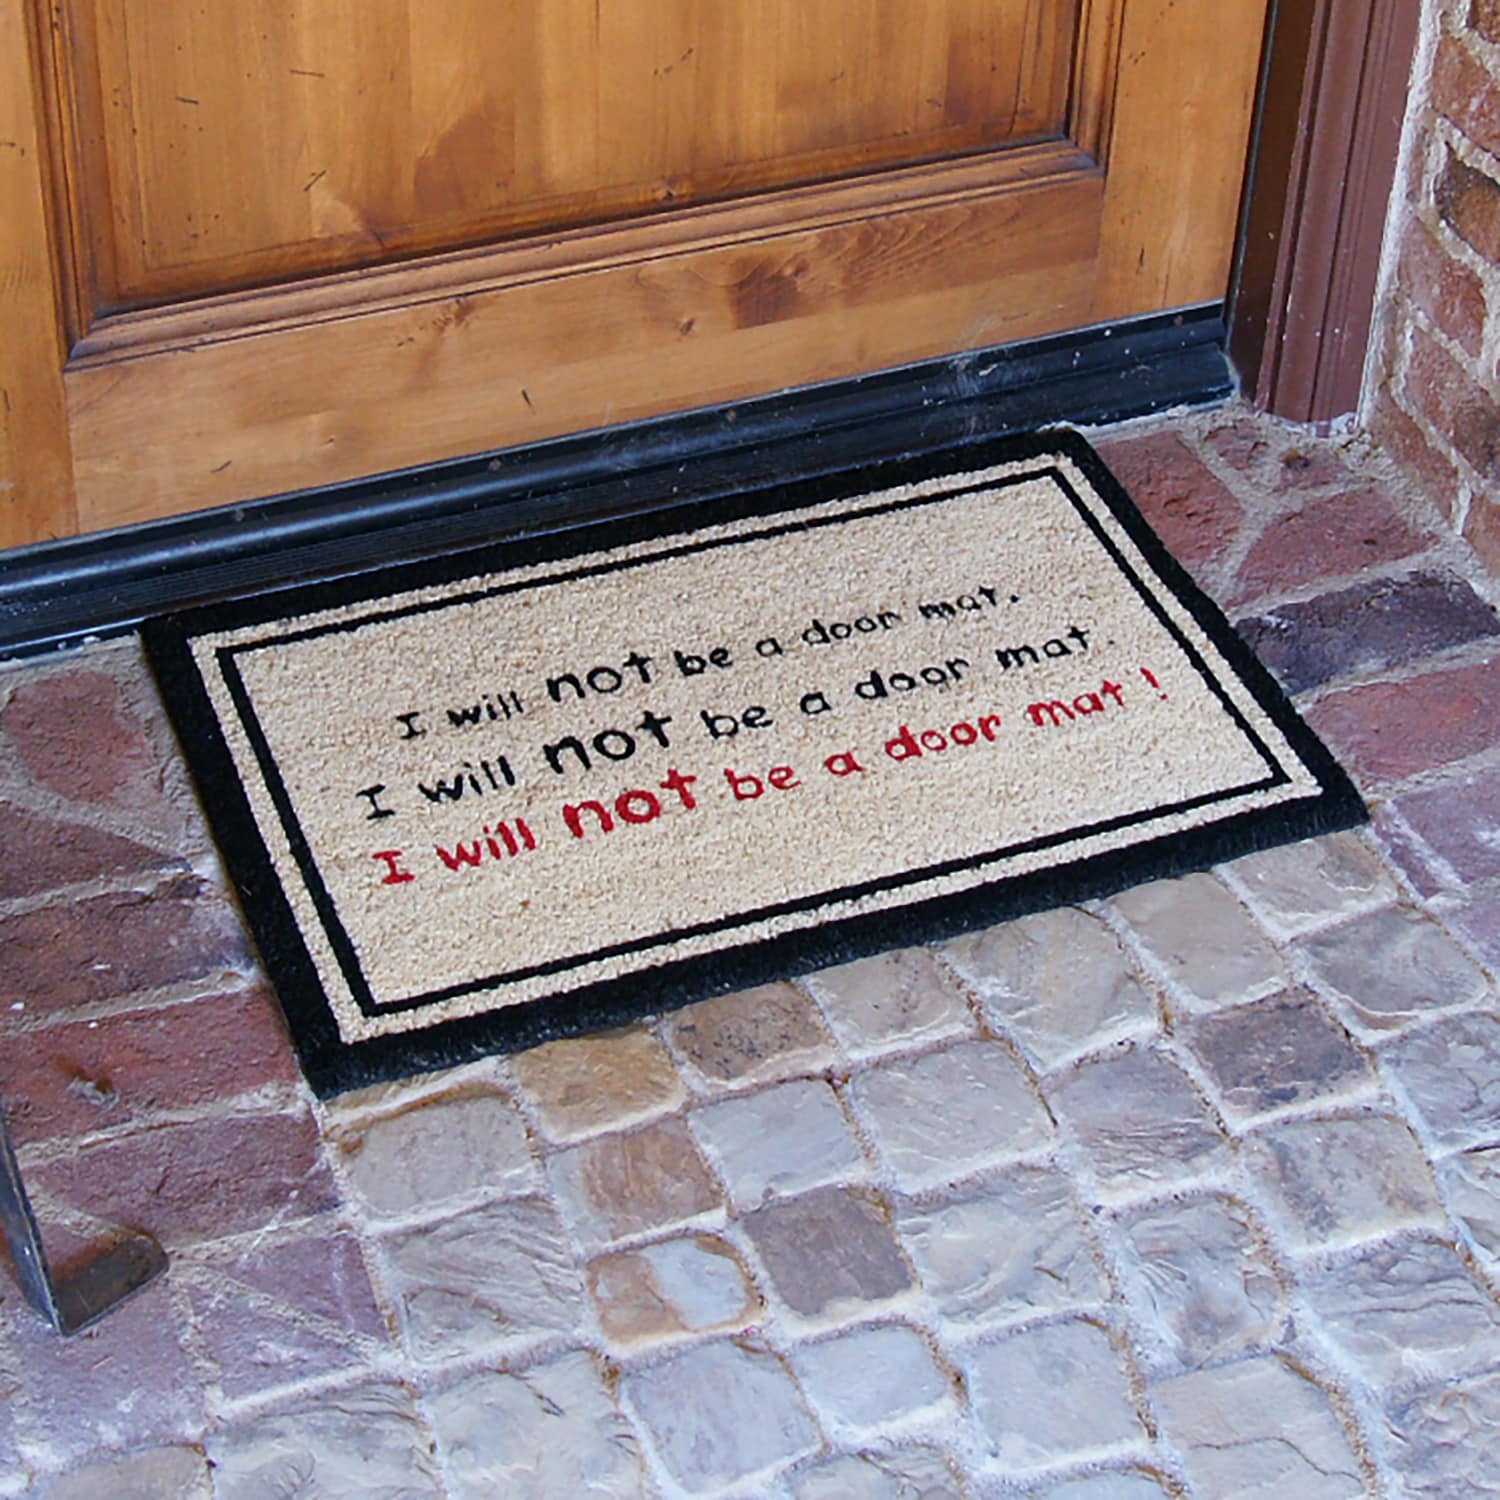 Rubber-Cal Rude Leave Door Mat Kit - 18 x 30 - 2 Doormats